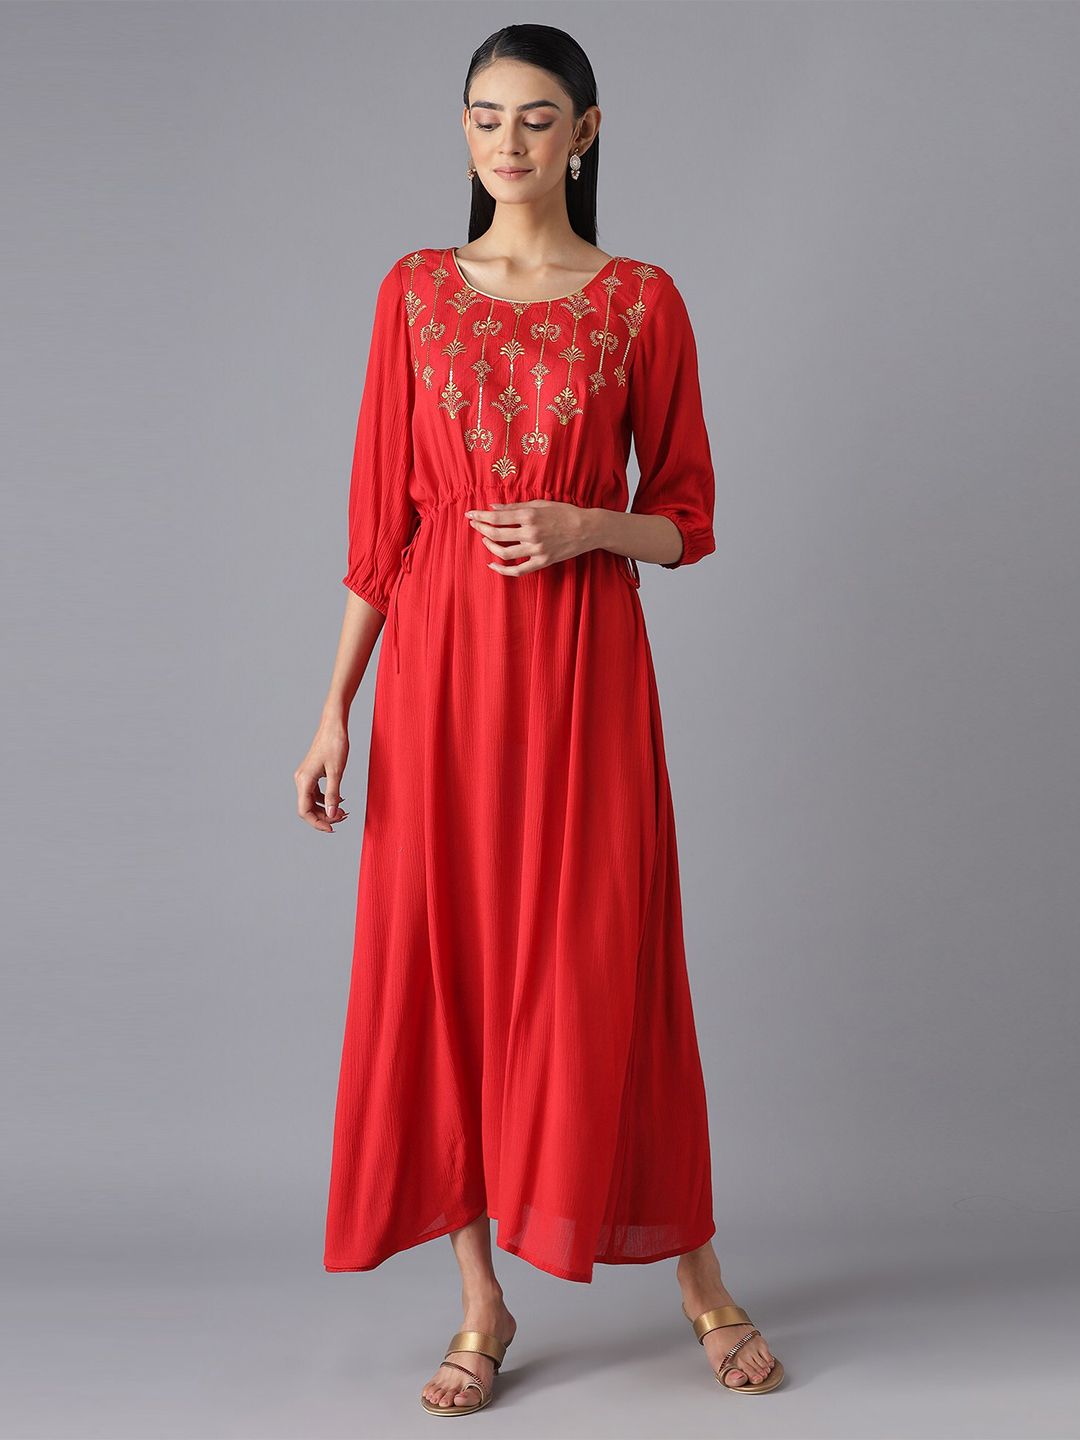 AURELIA Red Ethnic Maxi Dress Price in India